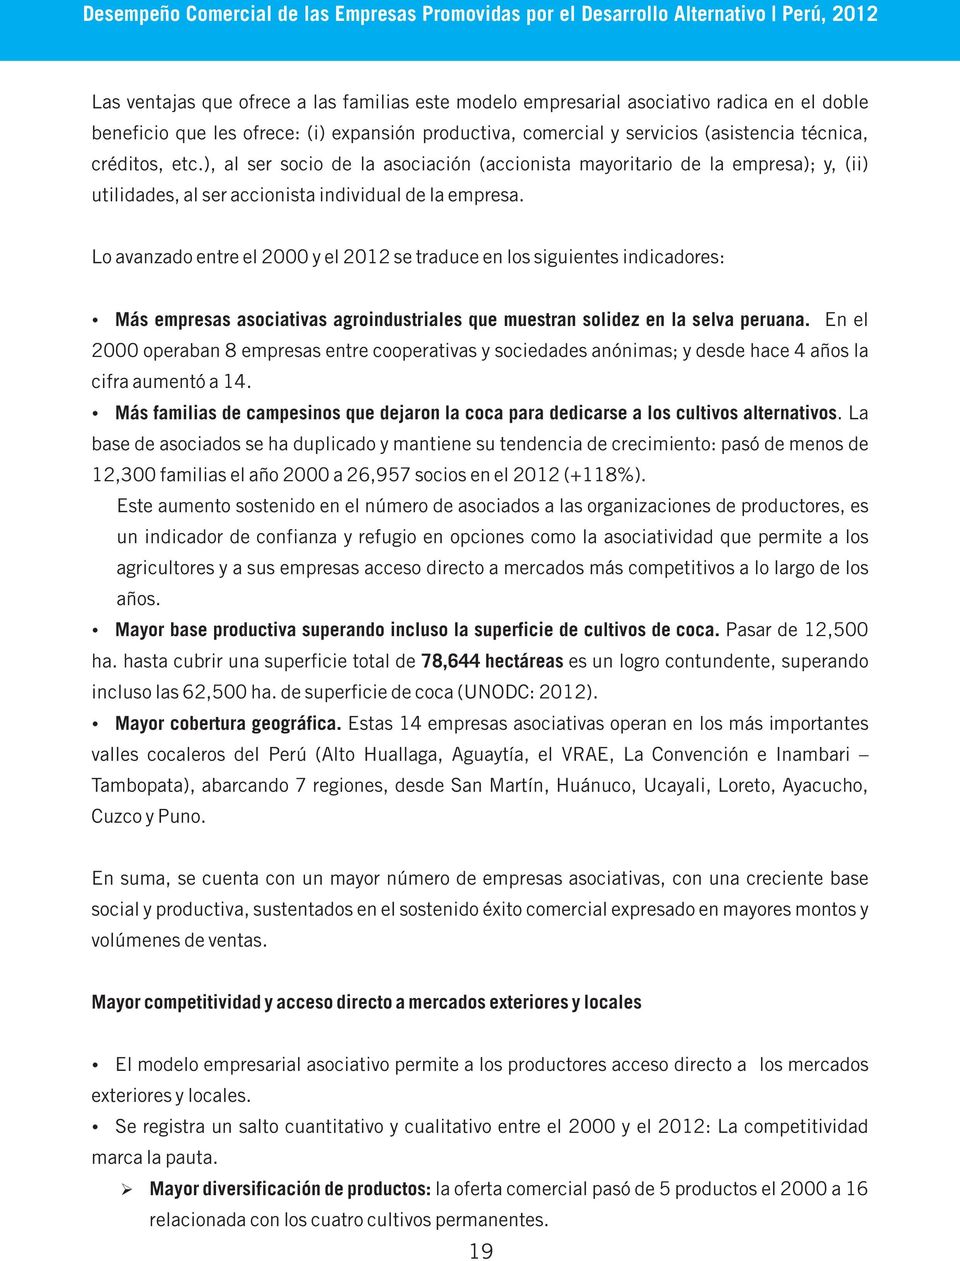 Lo avanzado entre el 2000 y el 2012 se traduce en los siguientes indicadores: Más empresas asociativas agroindustriales que muestran solidez en la selva peruana.